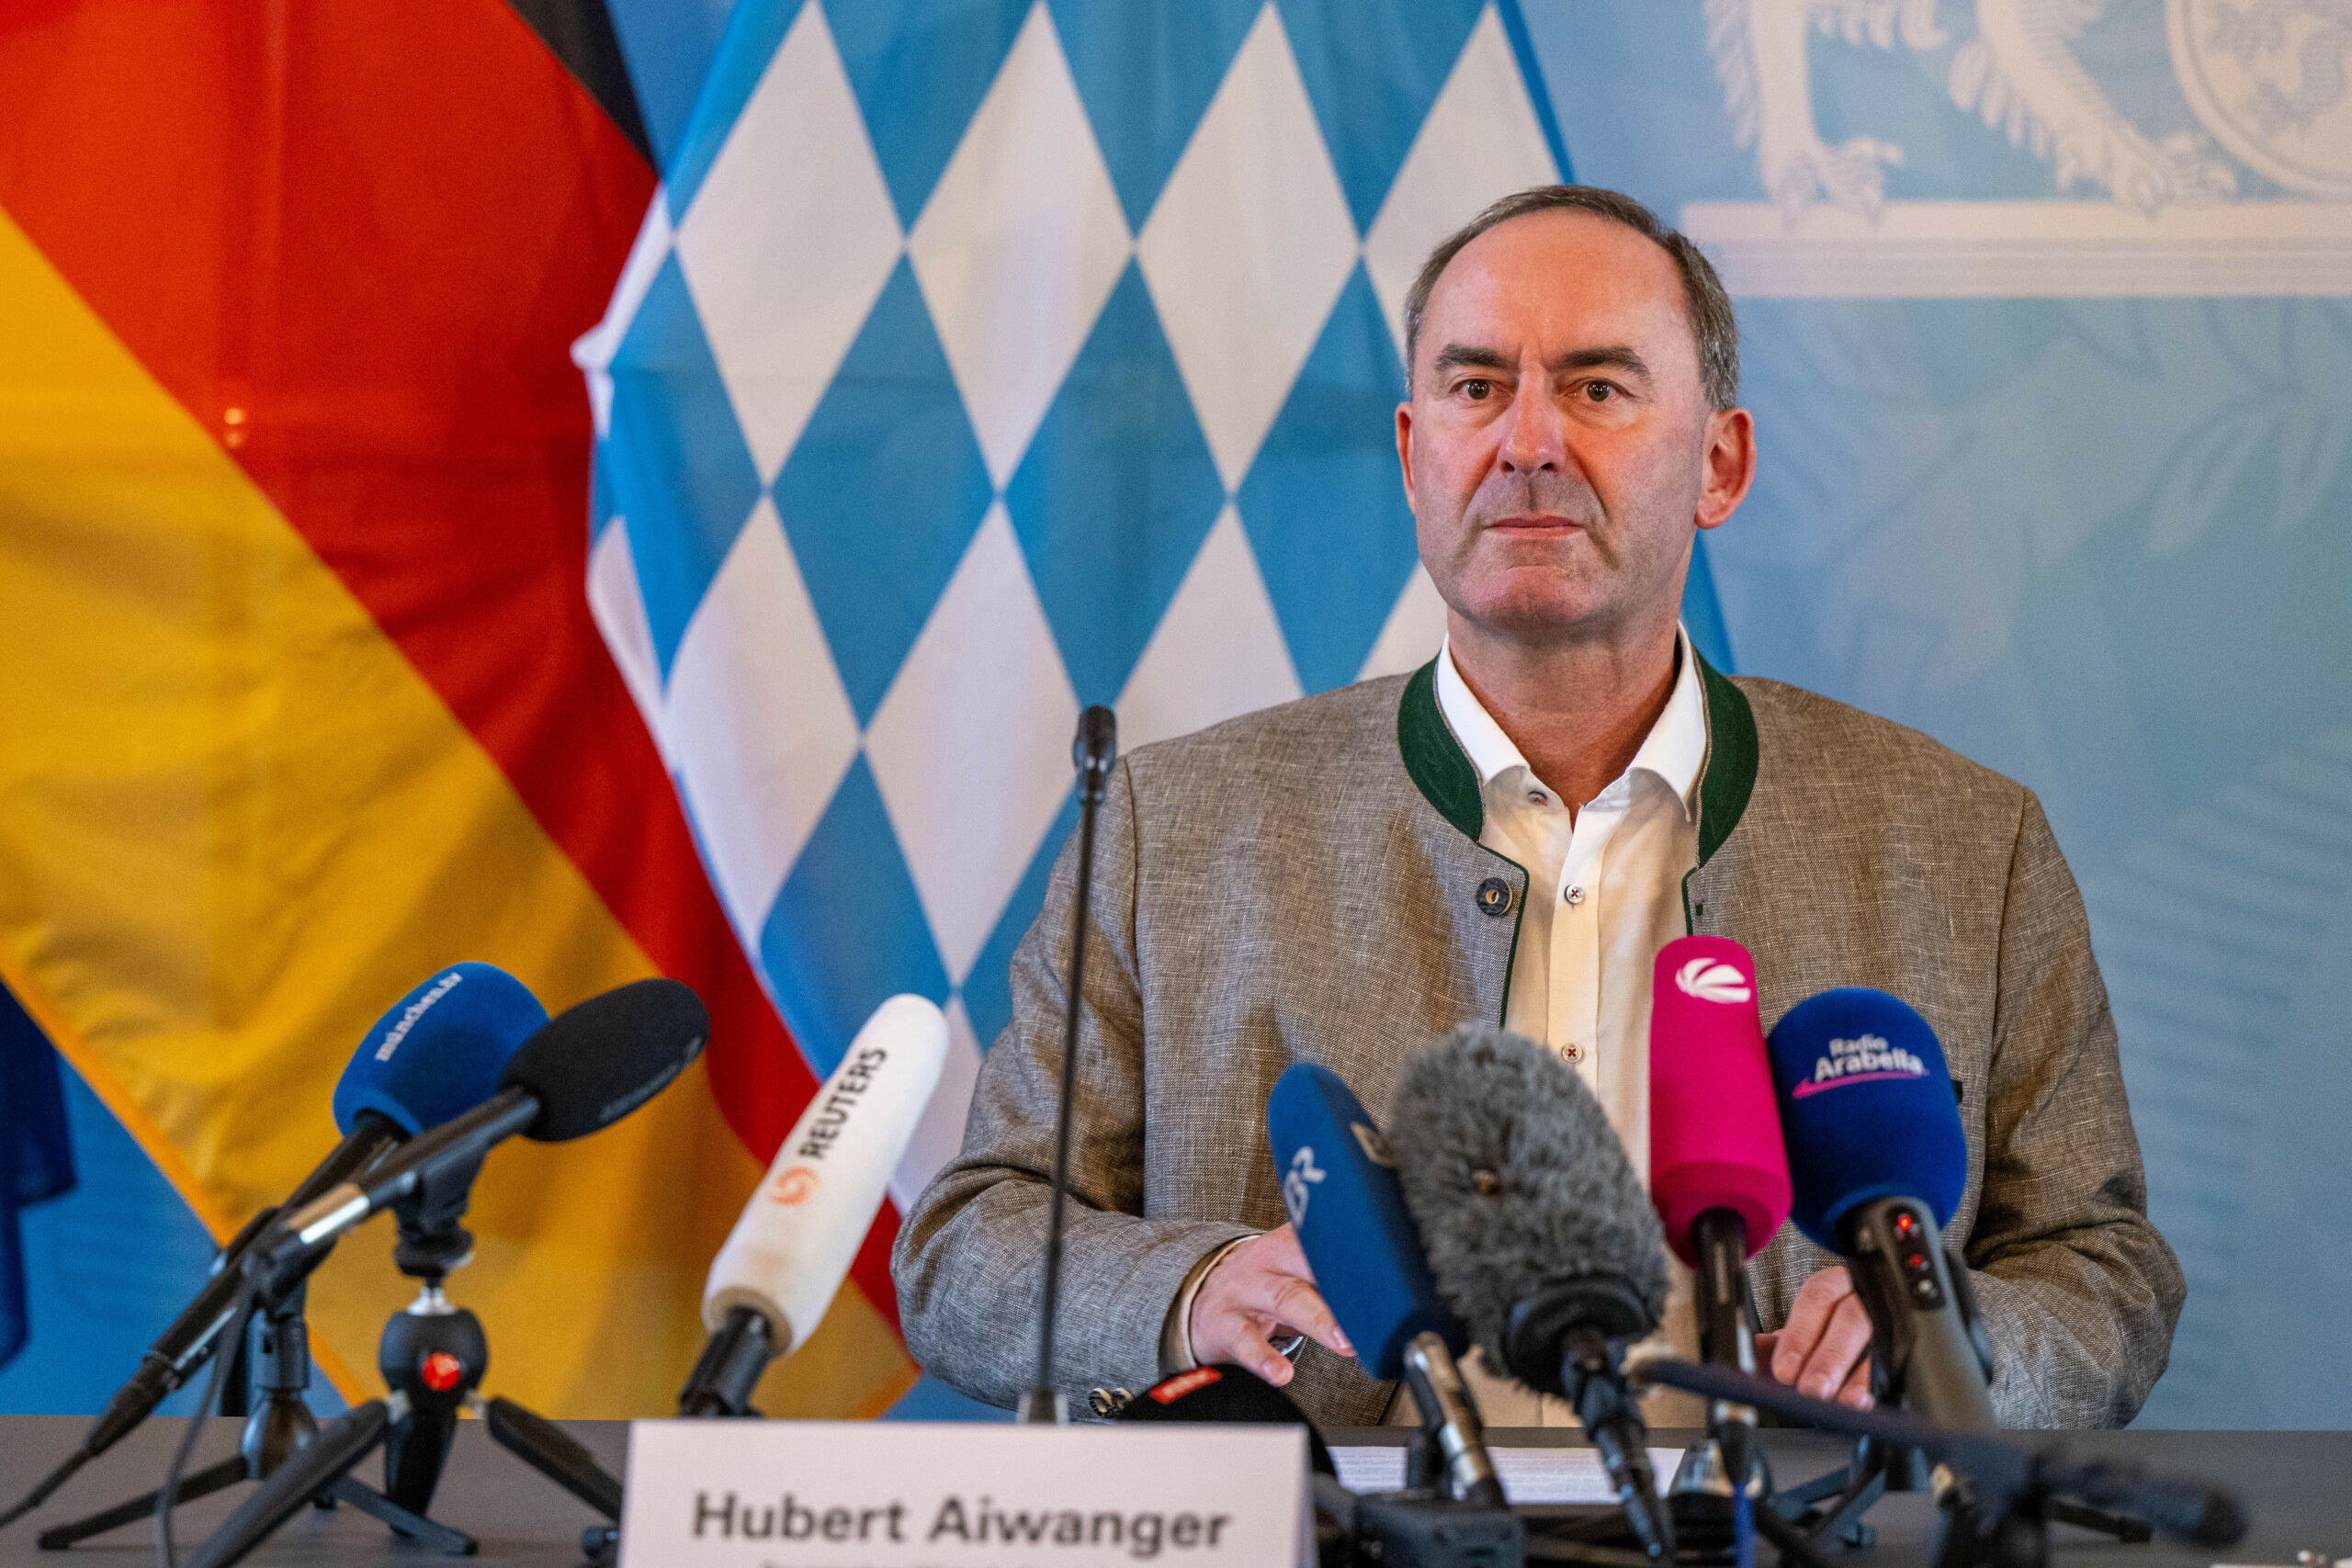 Hubert Aiwanger (Freie Wähler), Staatsminister für Wirtschaft, Landesentwicklung und Energie von Bayern, spricht auf einer Pressekonferenz.